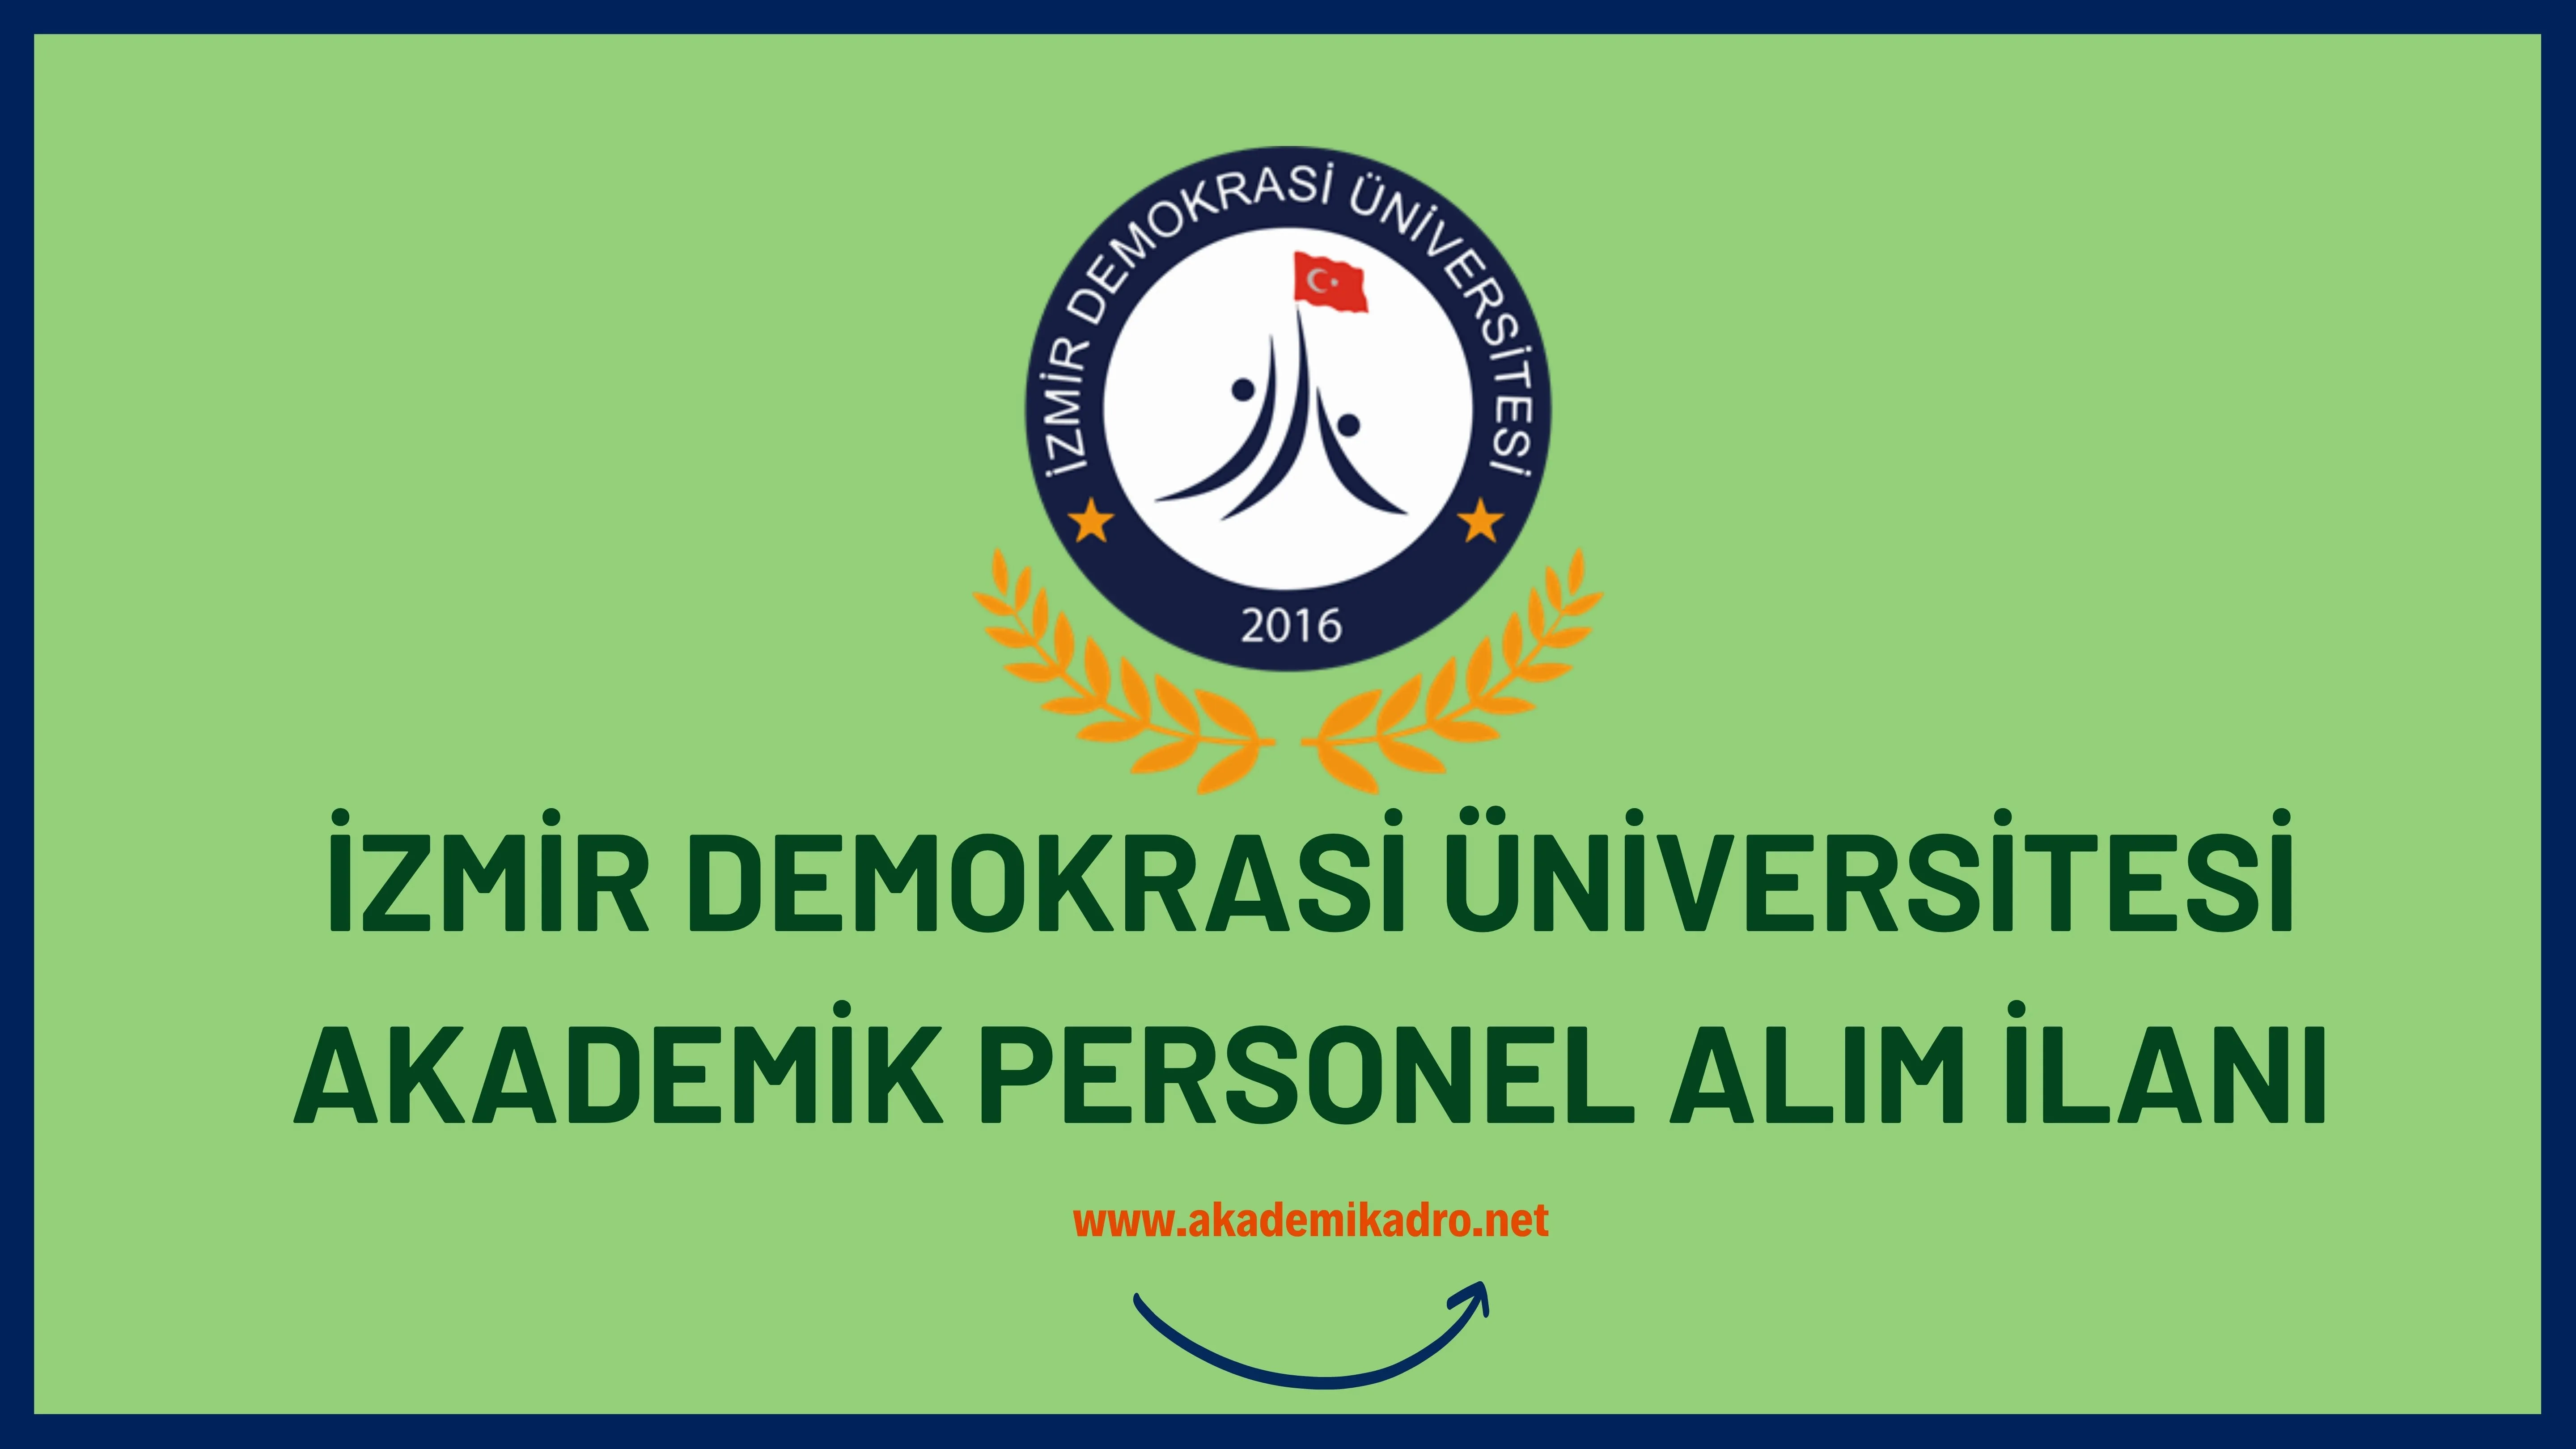 İzmir Demokrasi Üniversitesi birçok alandan 14 akademik personel alacak.